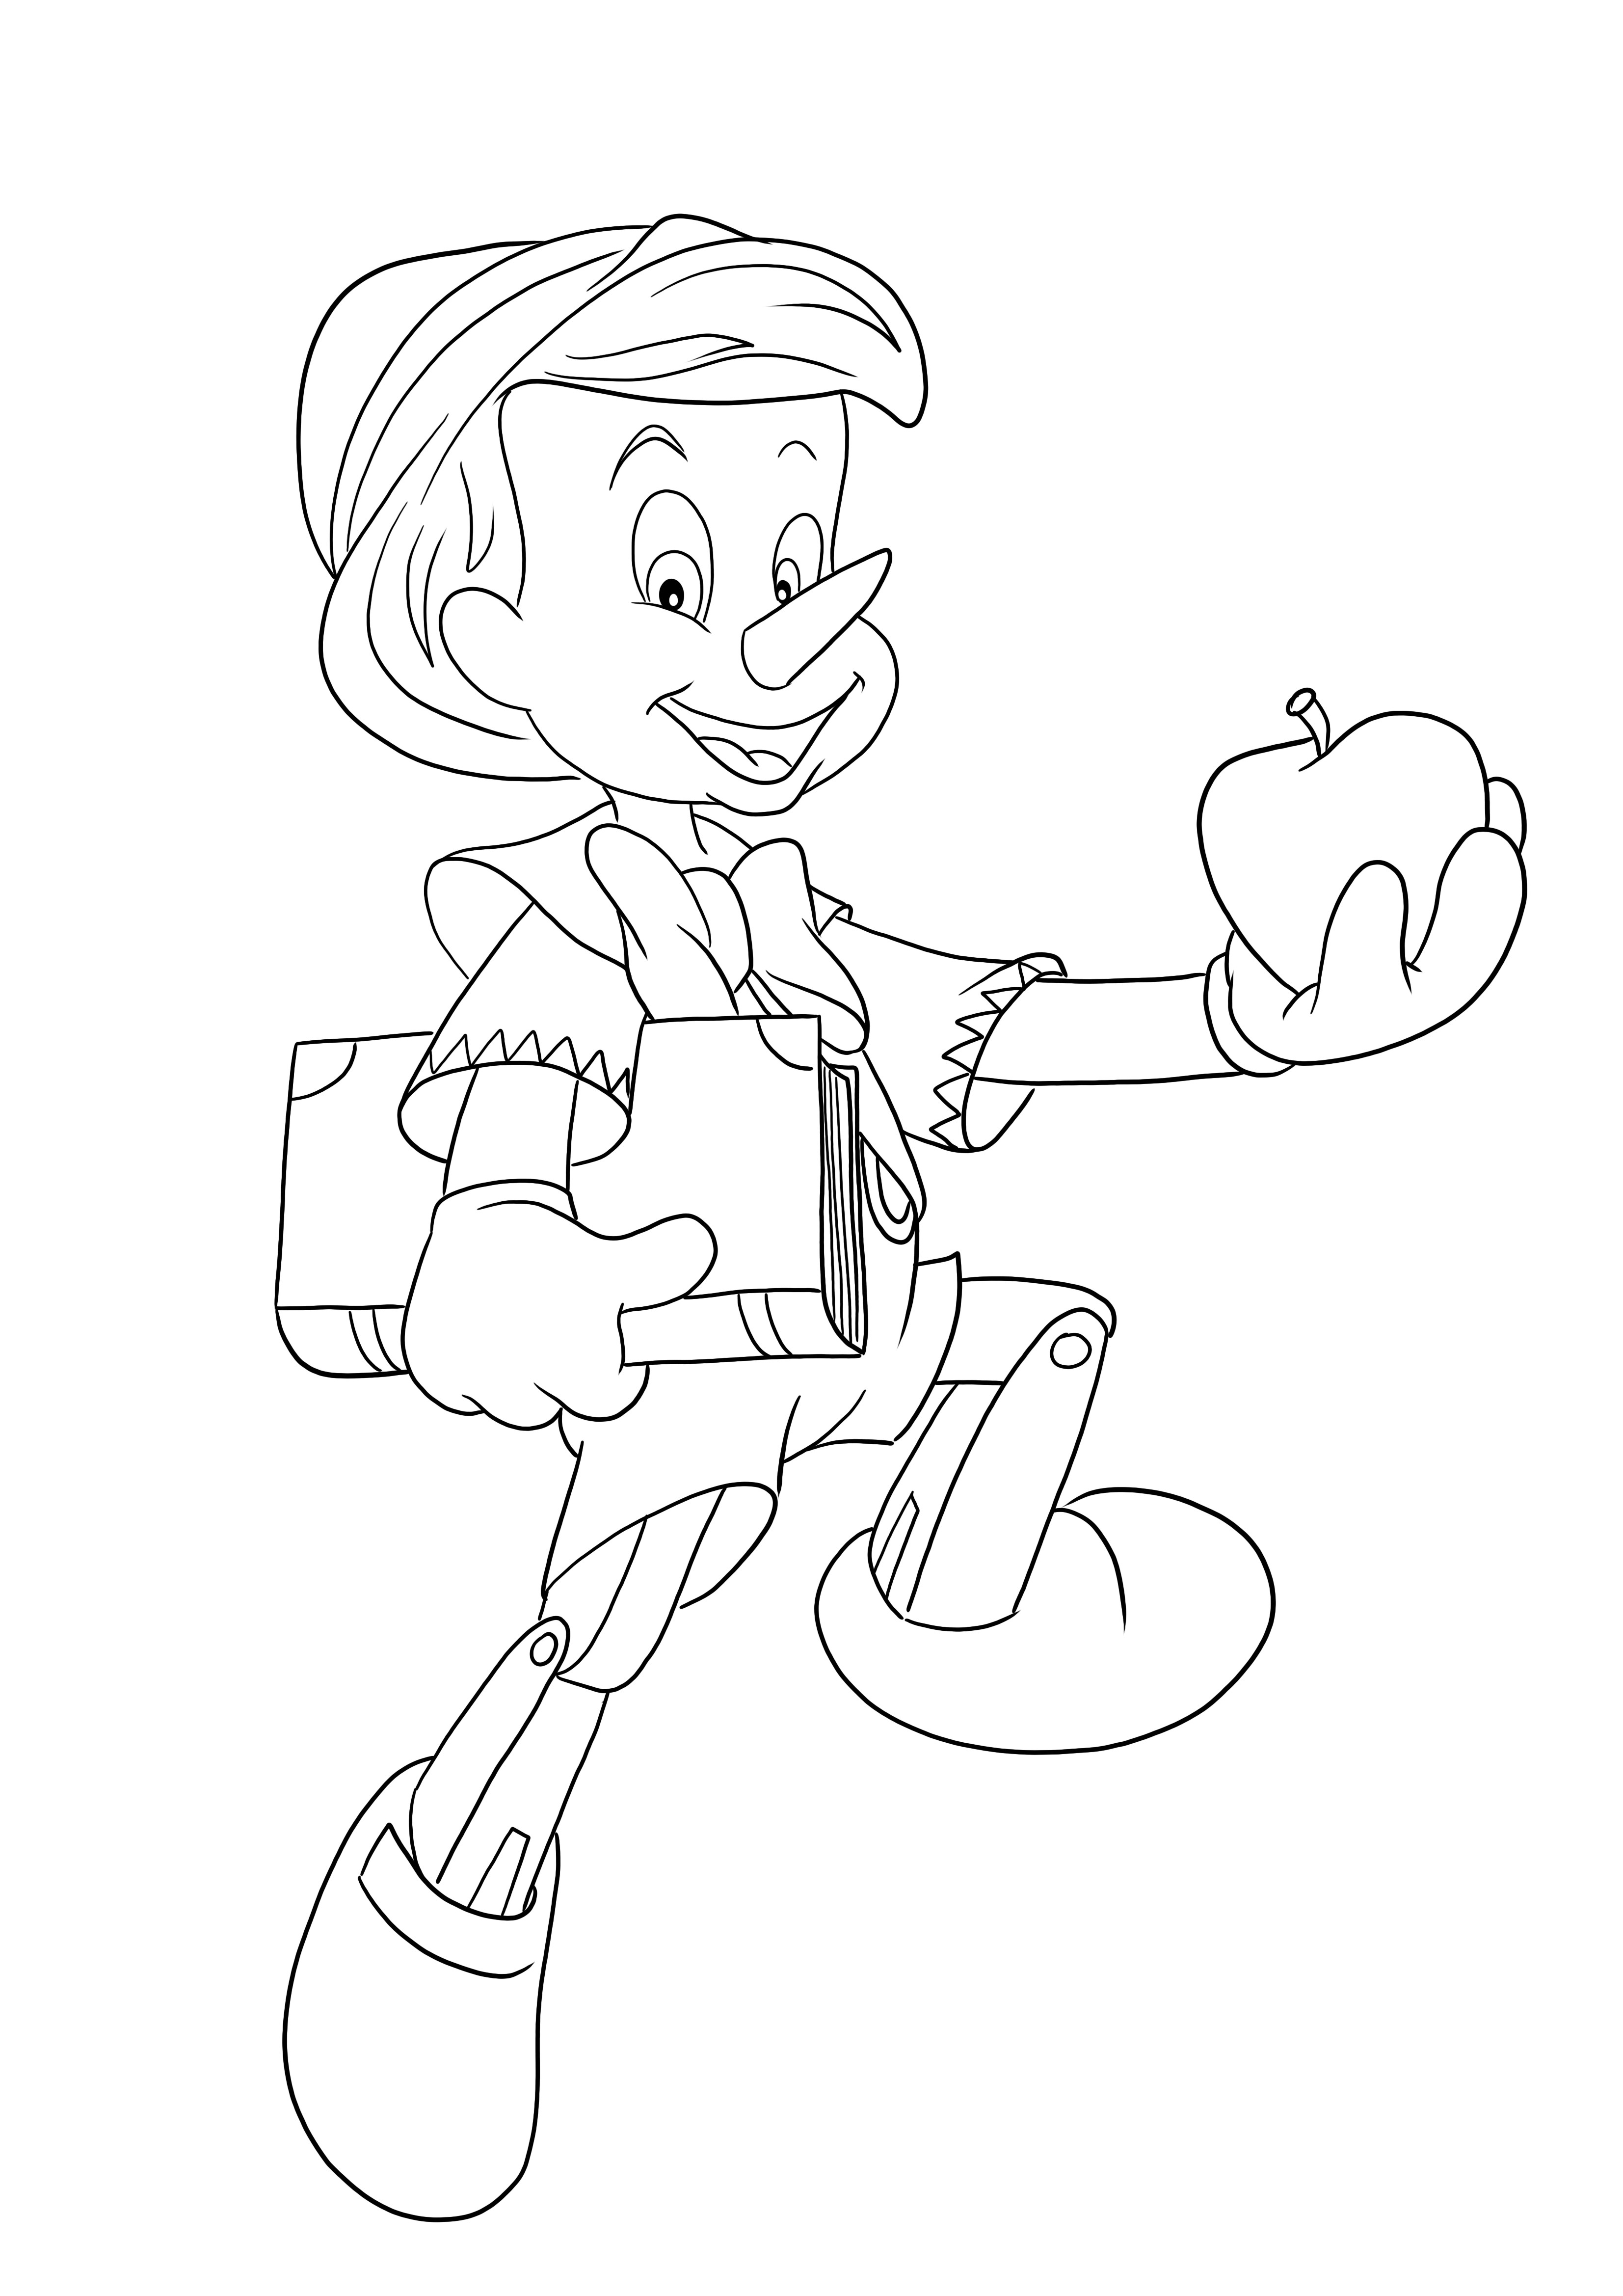 Szczęśliwy Pinokio za darmo do kolorowania i gotowy do drukowania obrazu